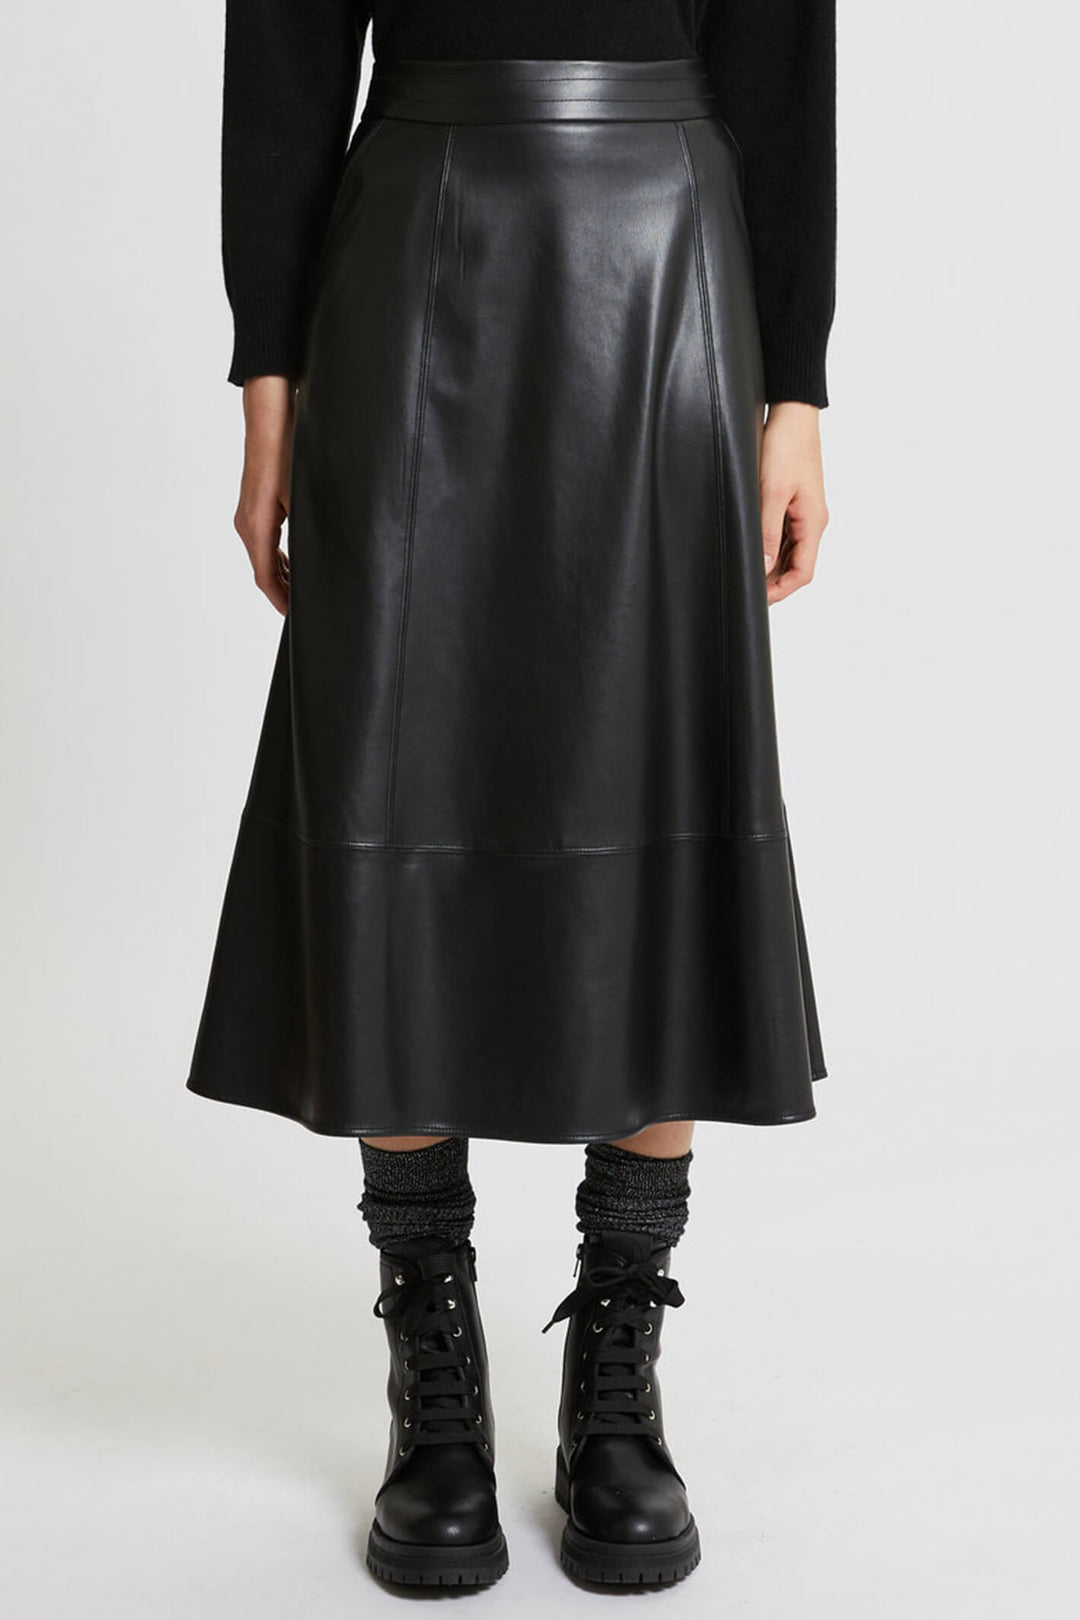 Marella Schizzo 2337760239200 Black Faux Leather Midi Skirt - Olivia Grace Fashion